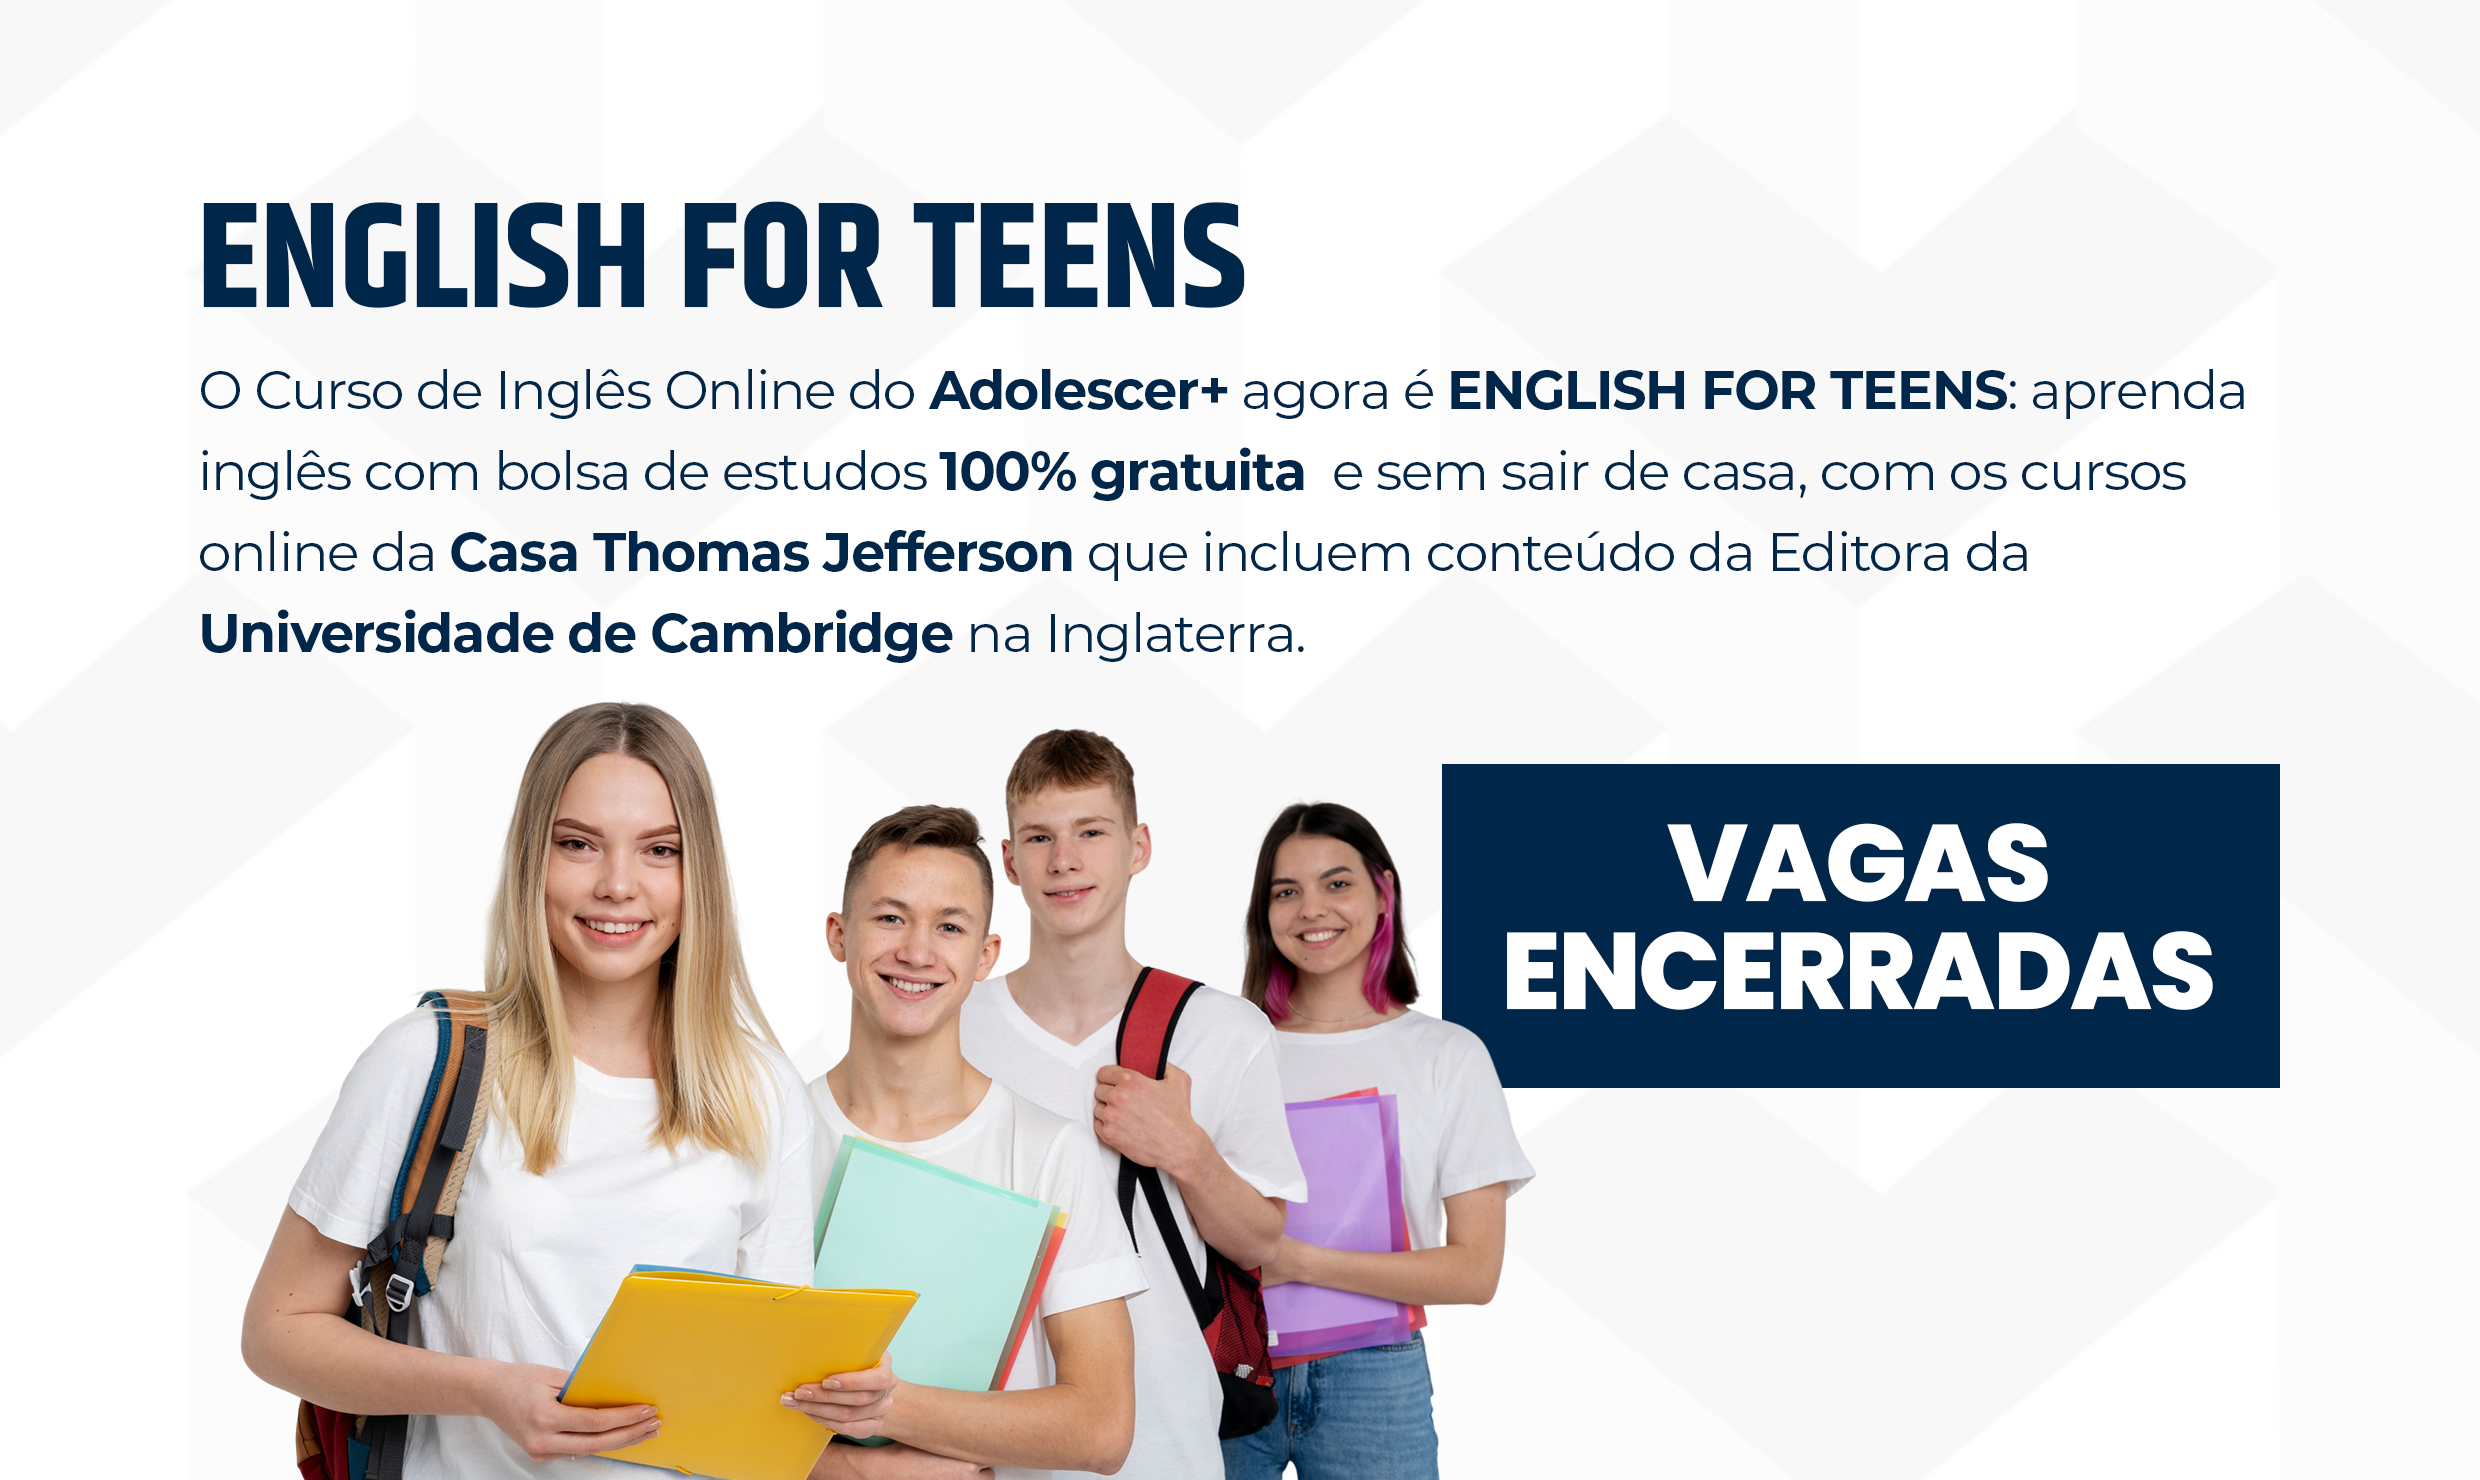 english for teens adolescer+ vagas encerradas